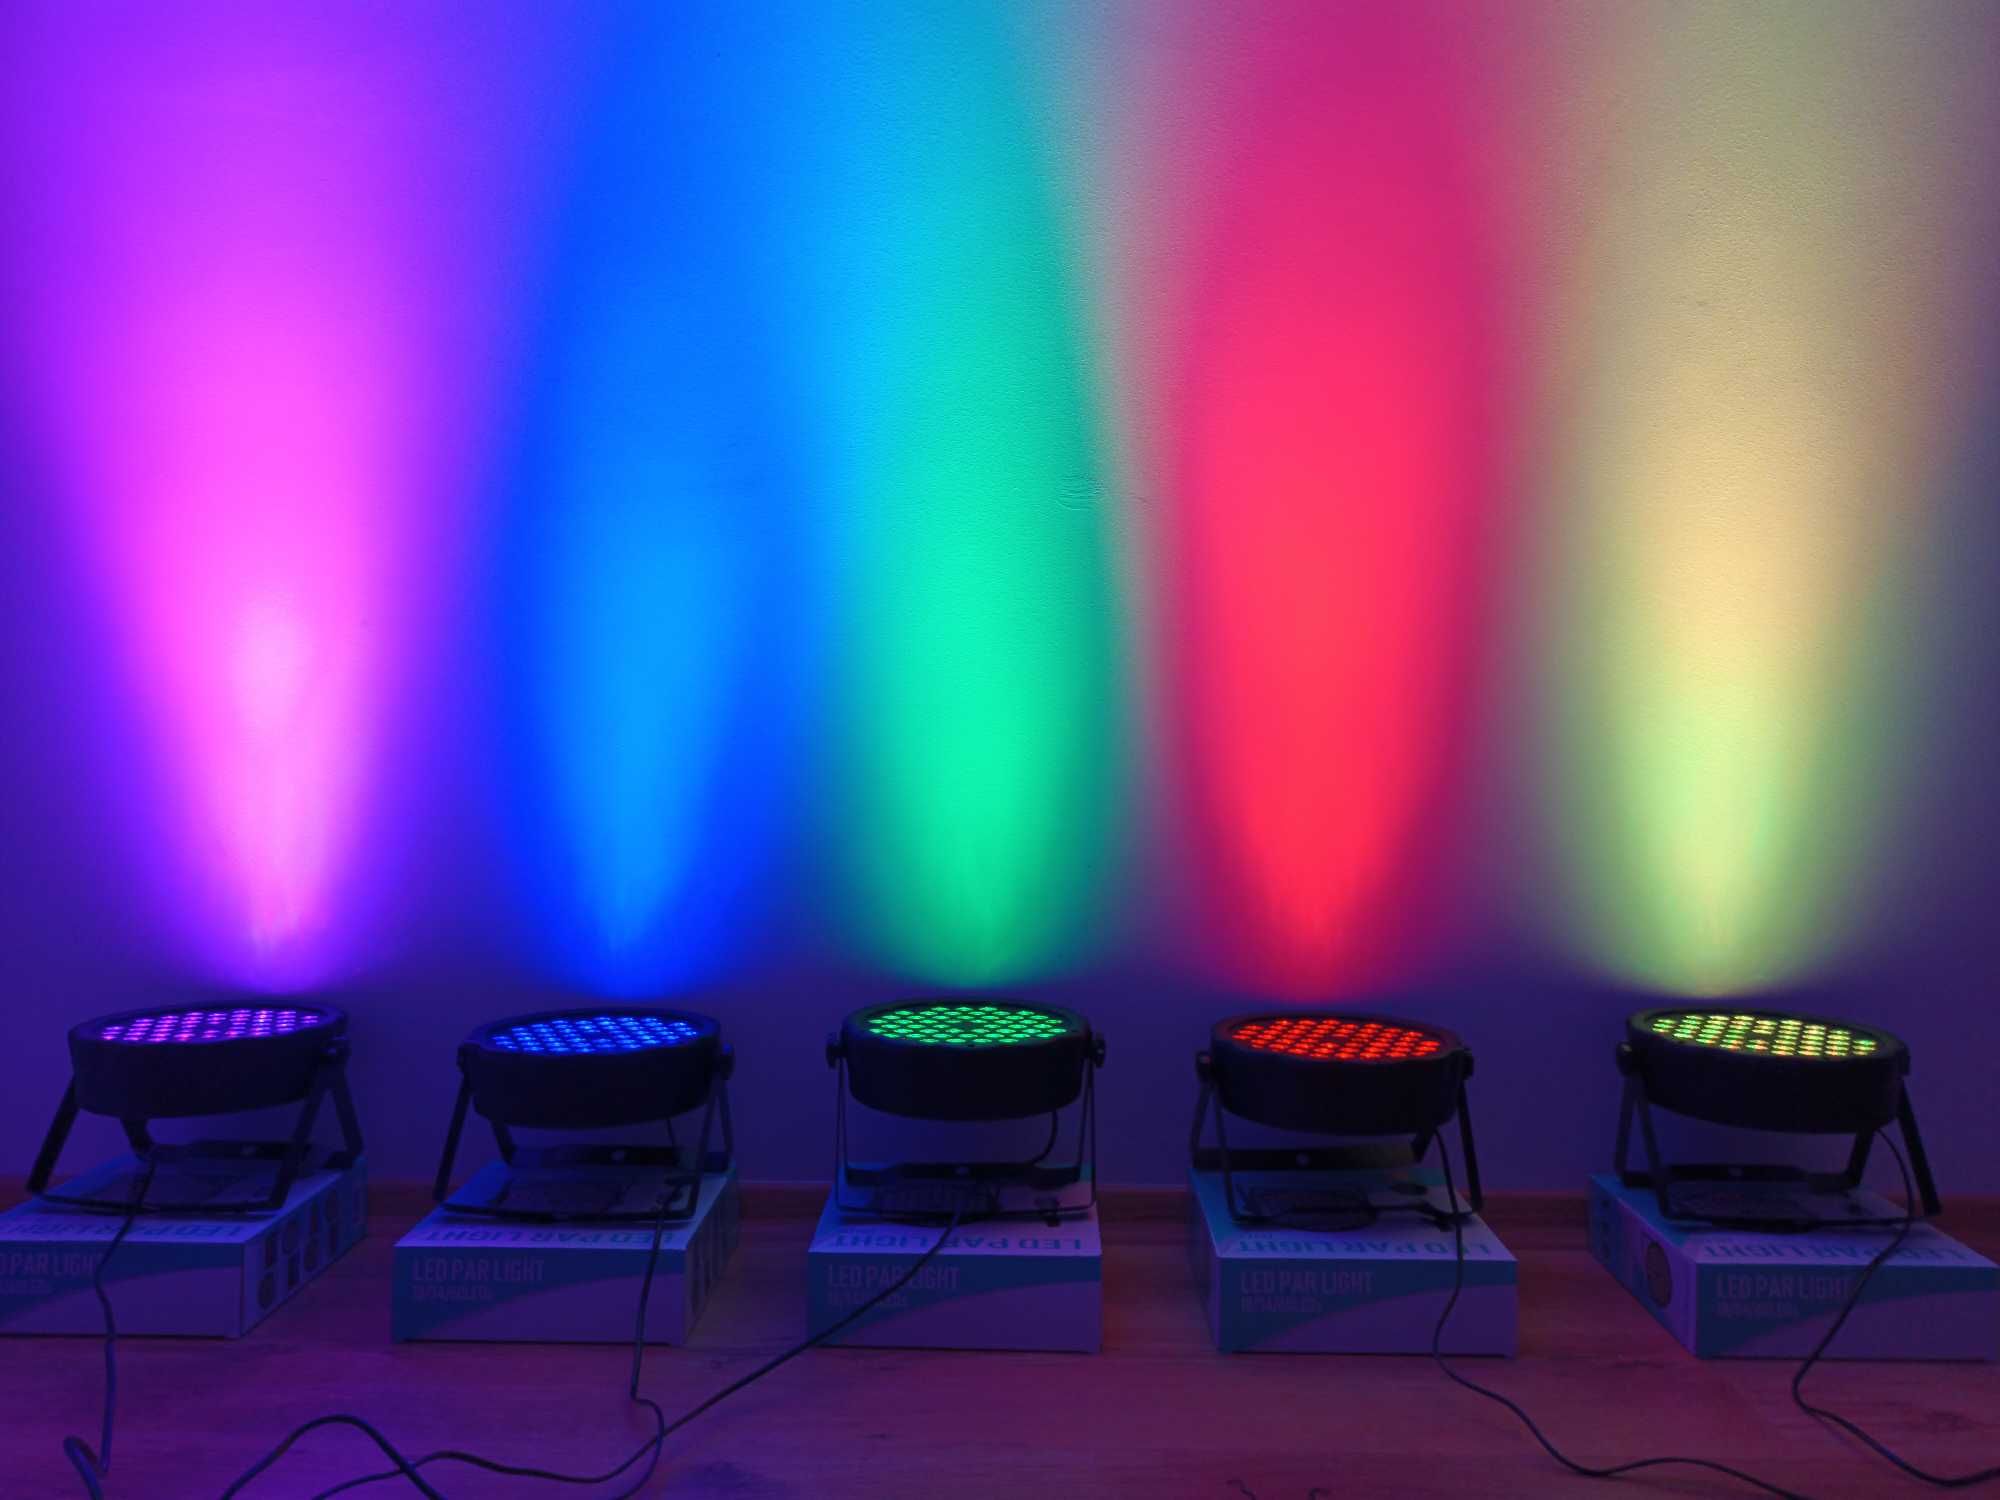 Proiector Disco joc de culori 54 LED Lumini Scena *Microfon incorporat